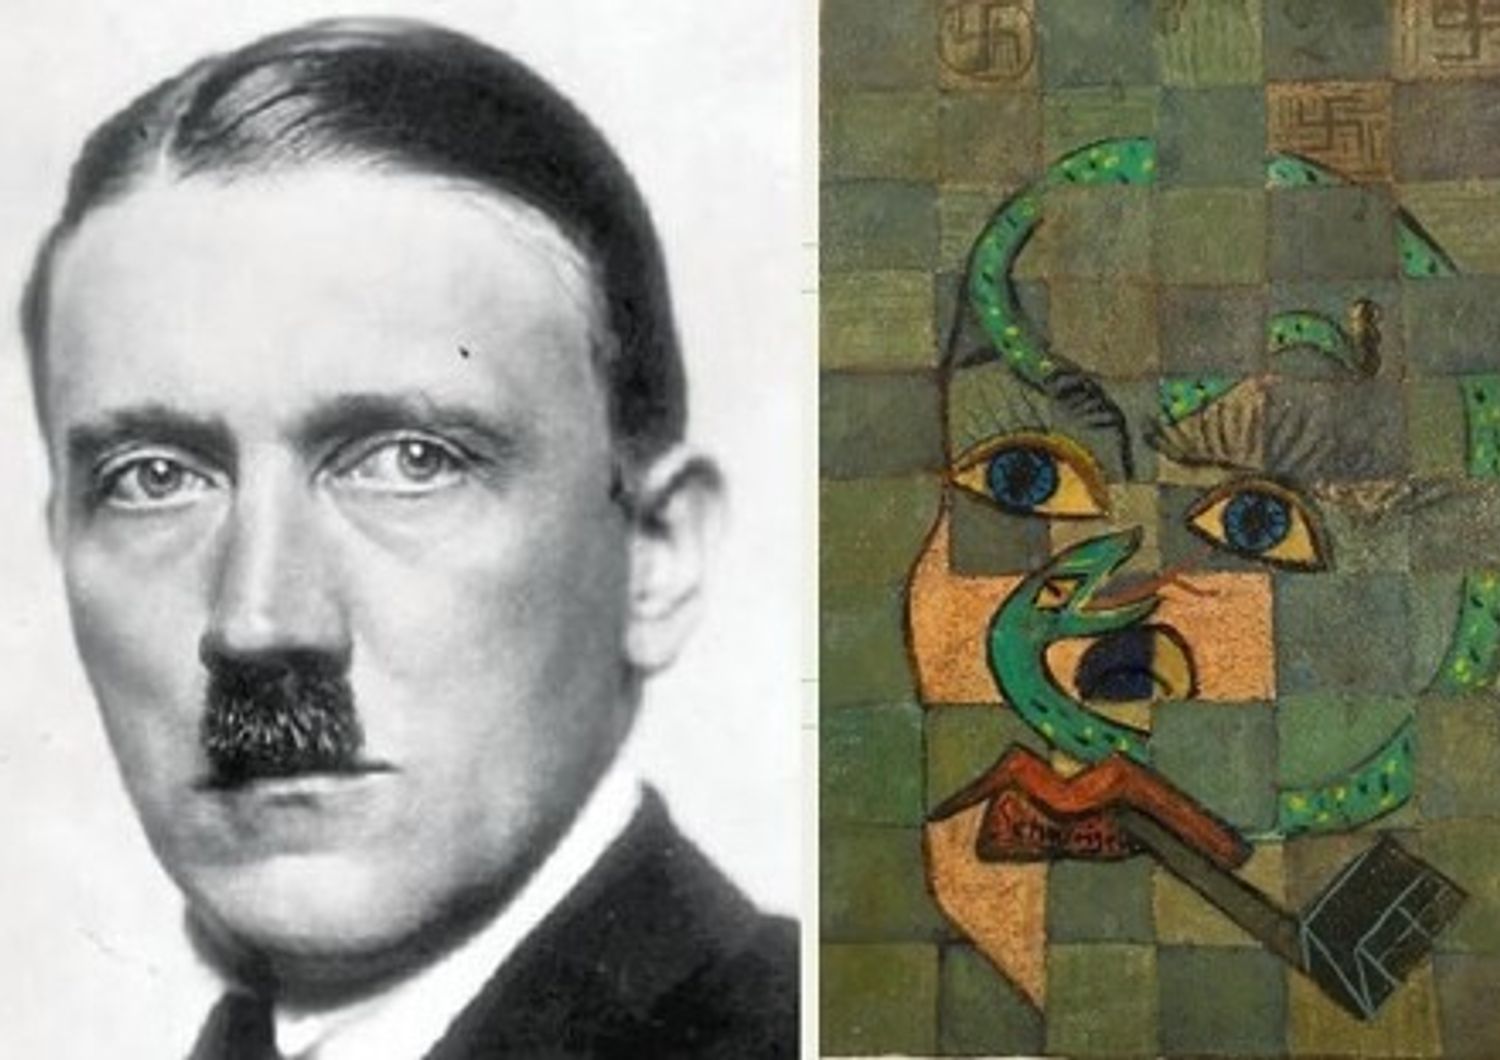 Il volto di Hitler a confronto con il dipinto di Picasso